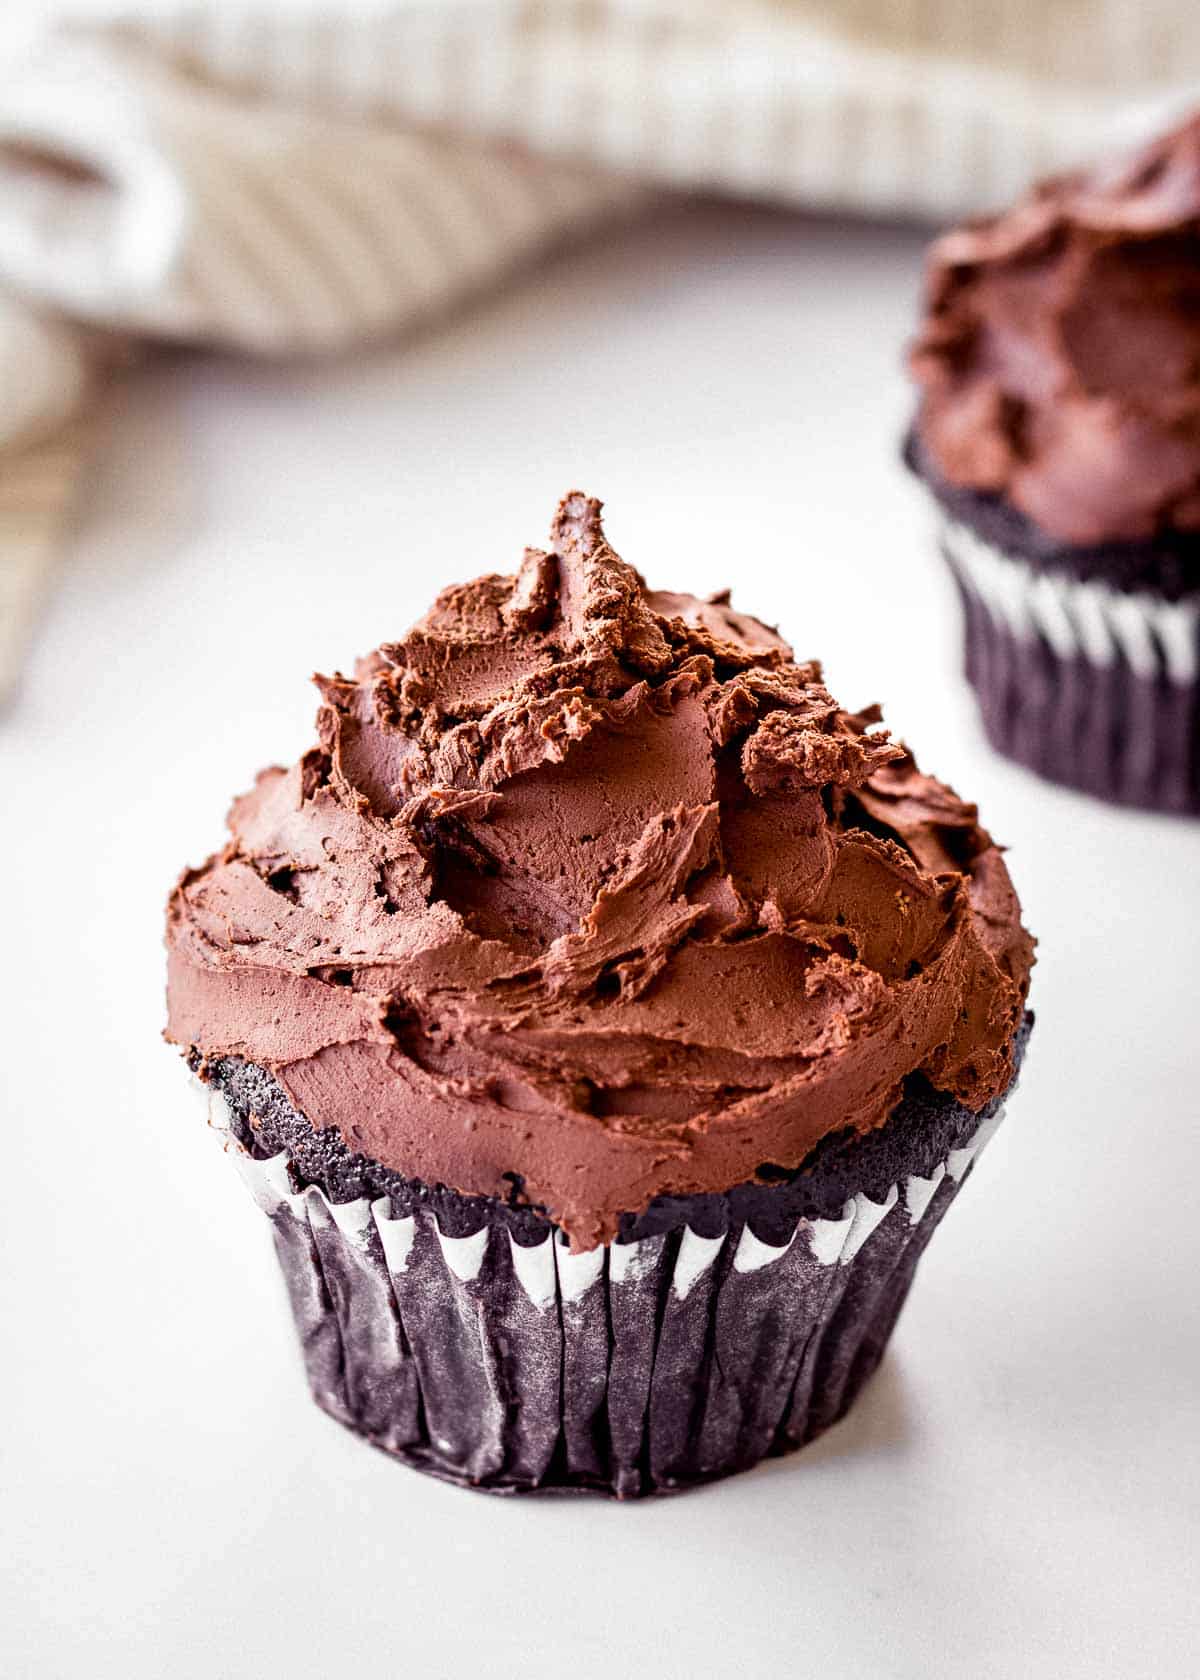 Δύο cupcakes σοκολάτας διακοσμημένα με vegan ganache μαύρης σοκολάτας.  Μια πετσέτα τσαγιού κάθεται στο βάθος.